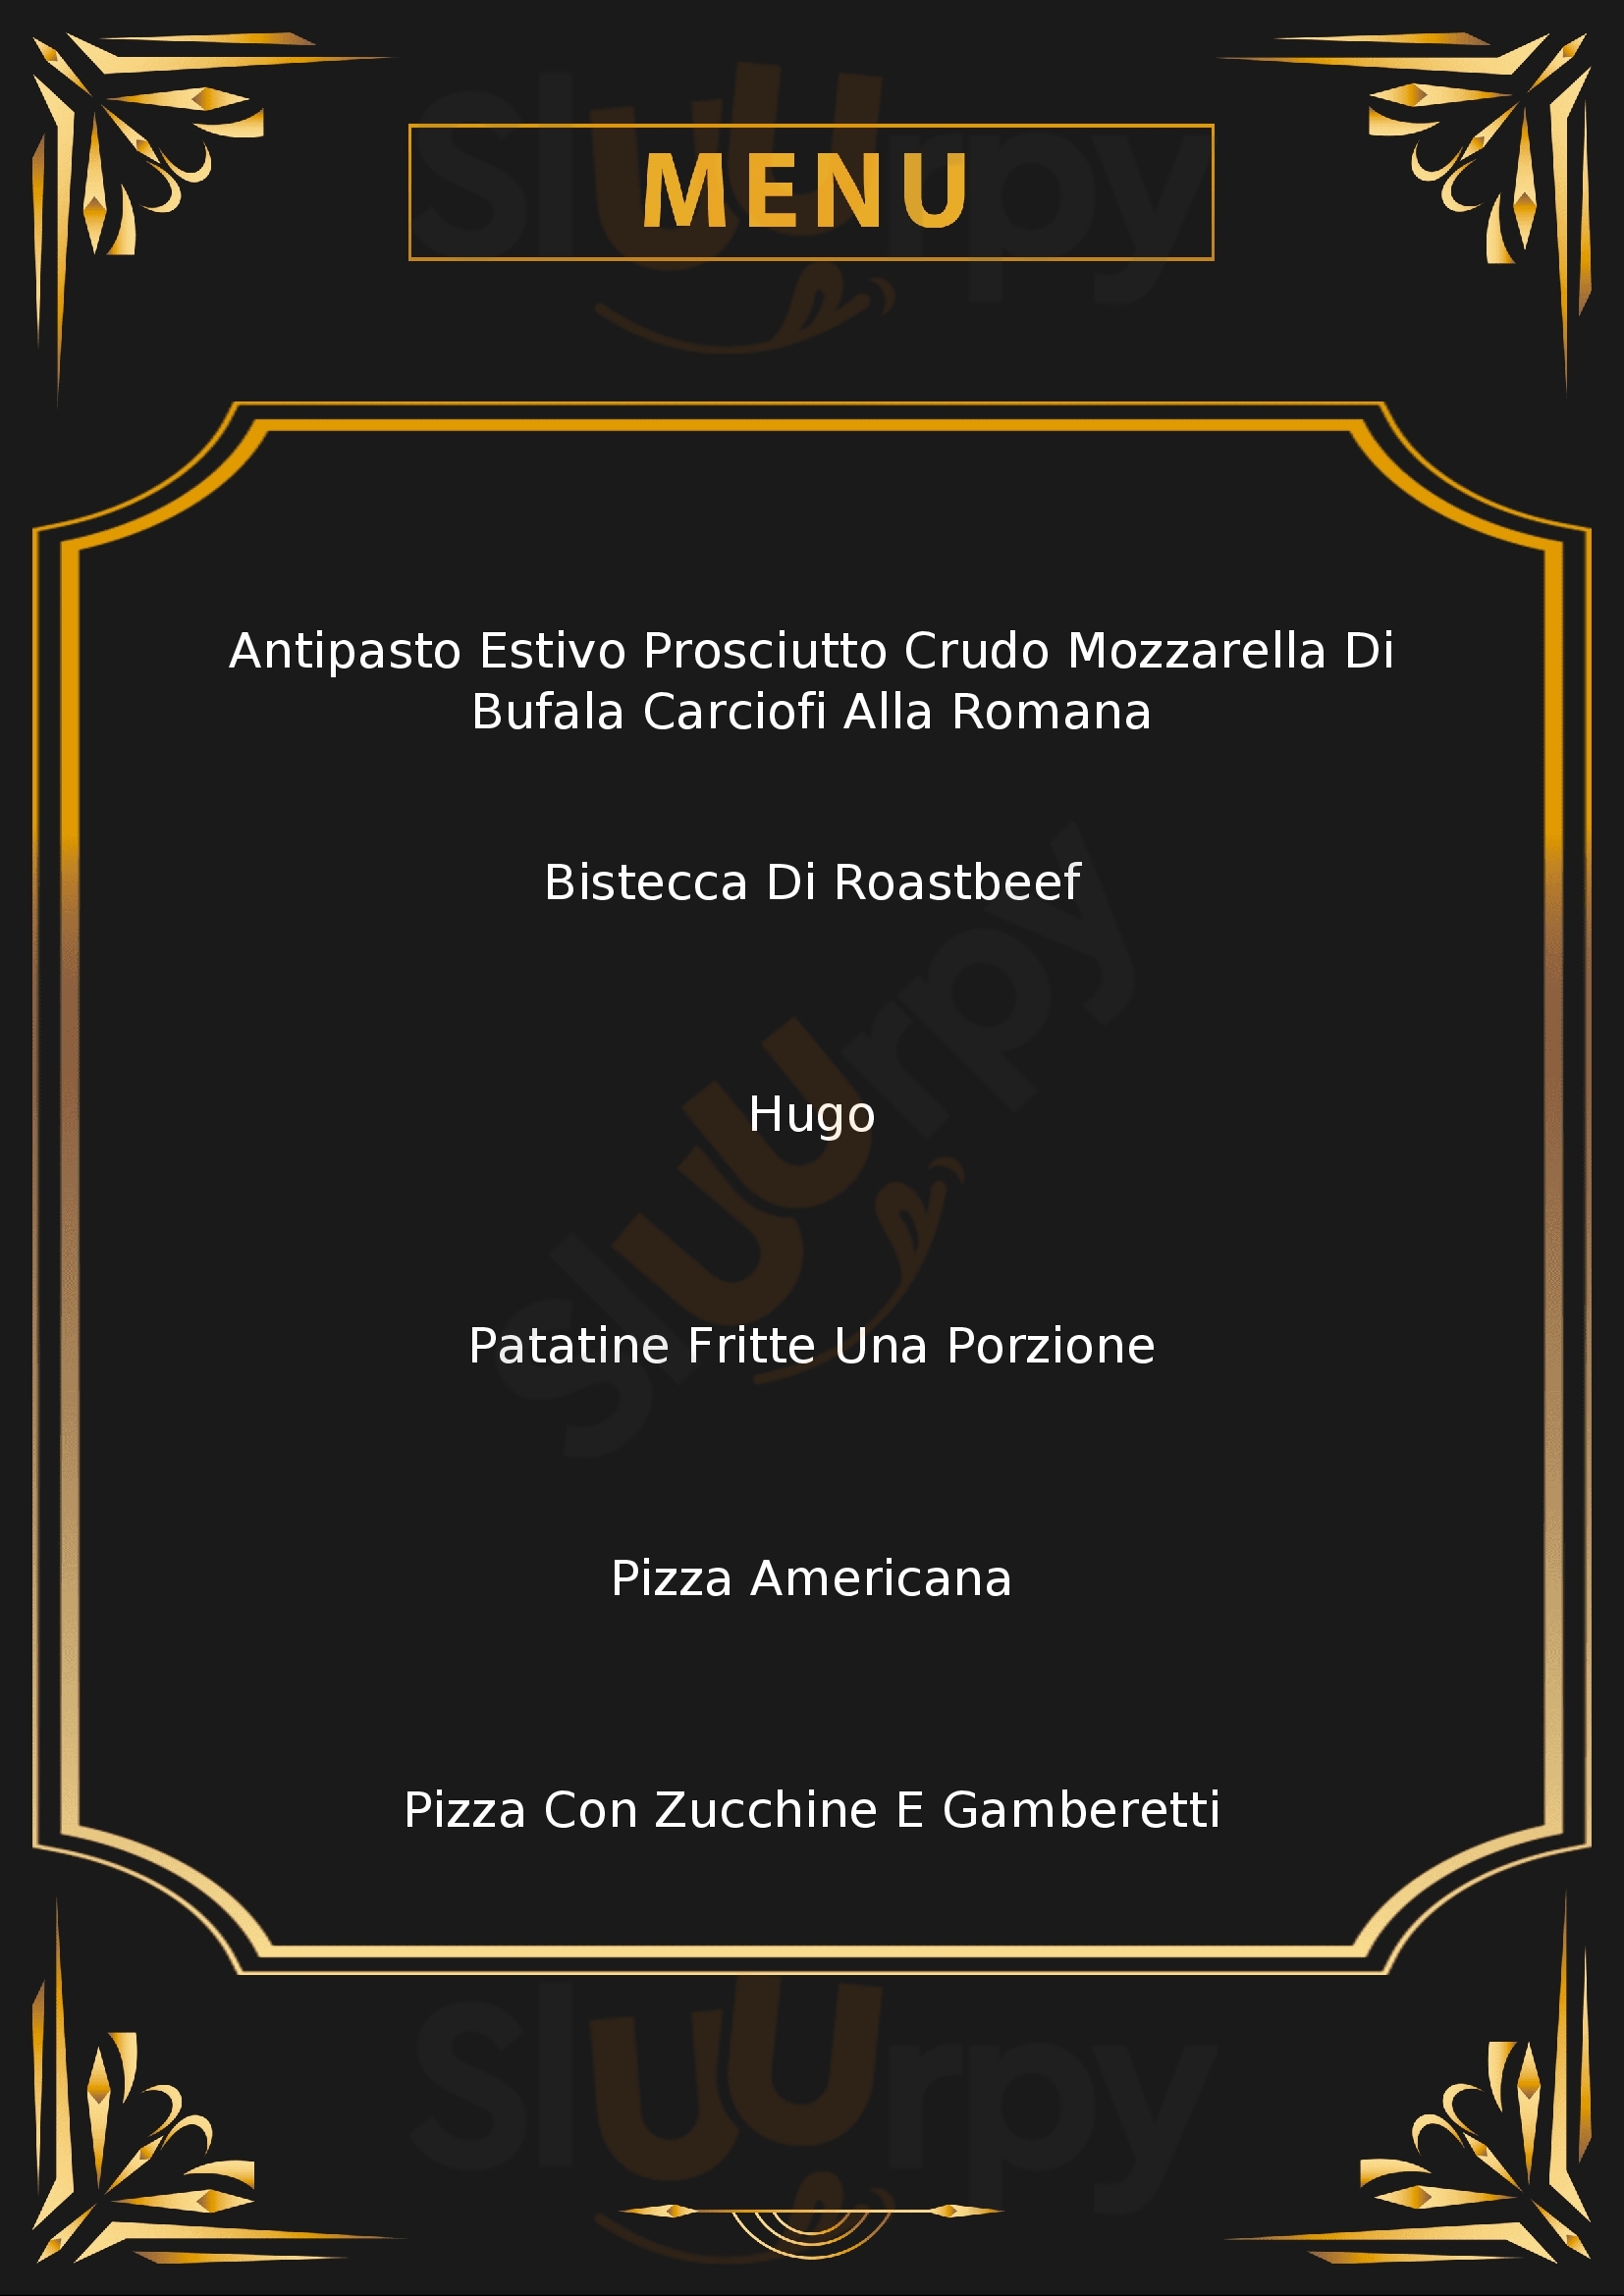 Pizzeria Italo Rover Caneva menù 1 pagina